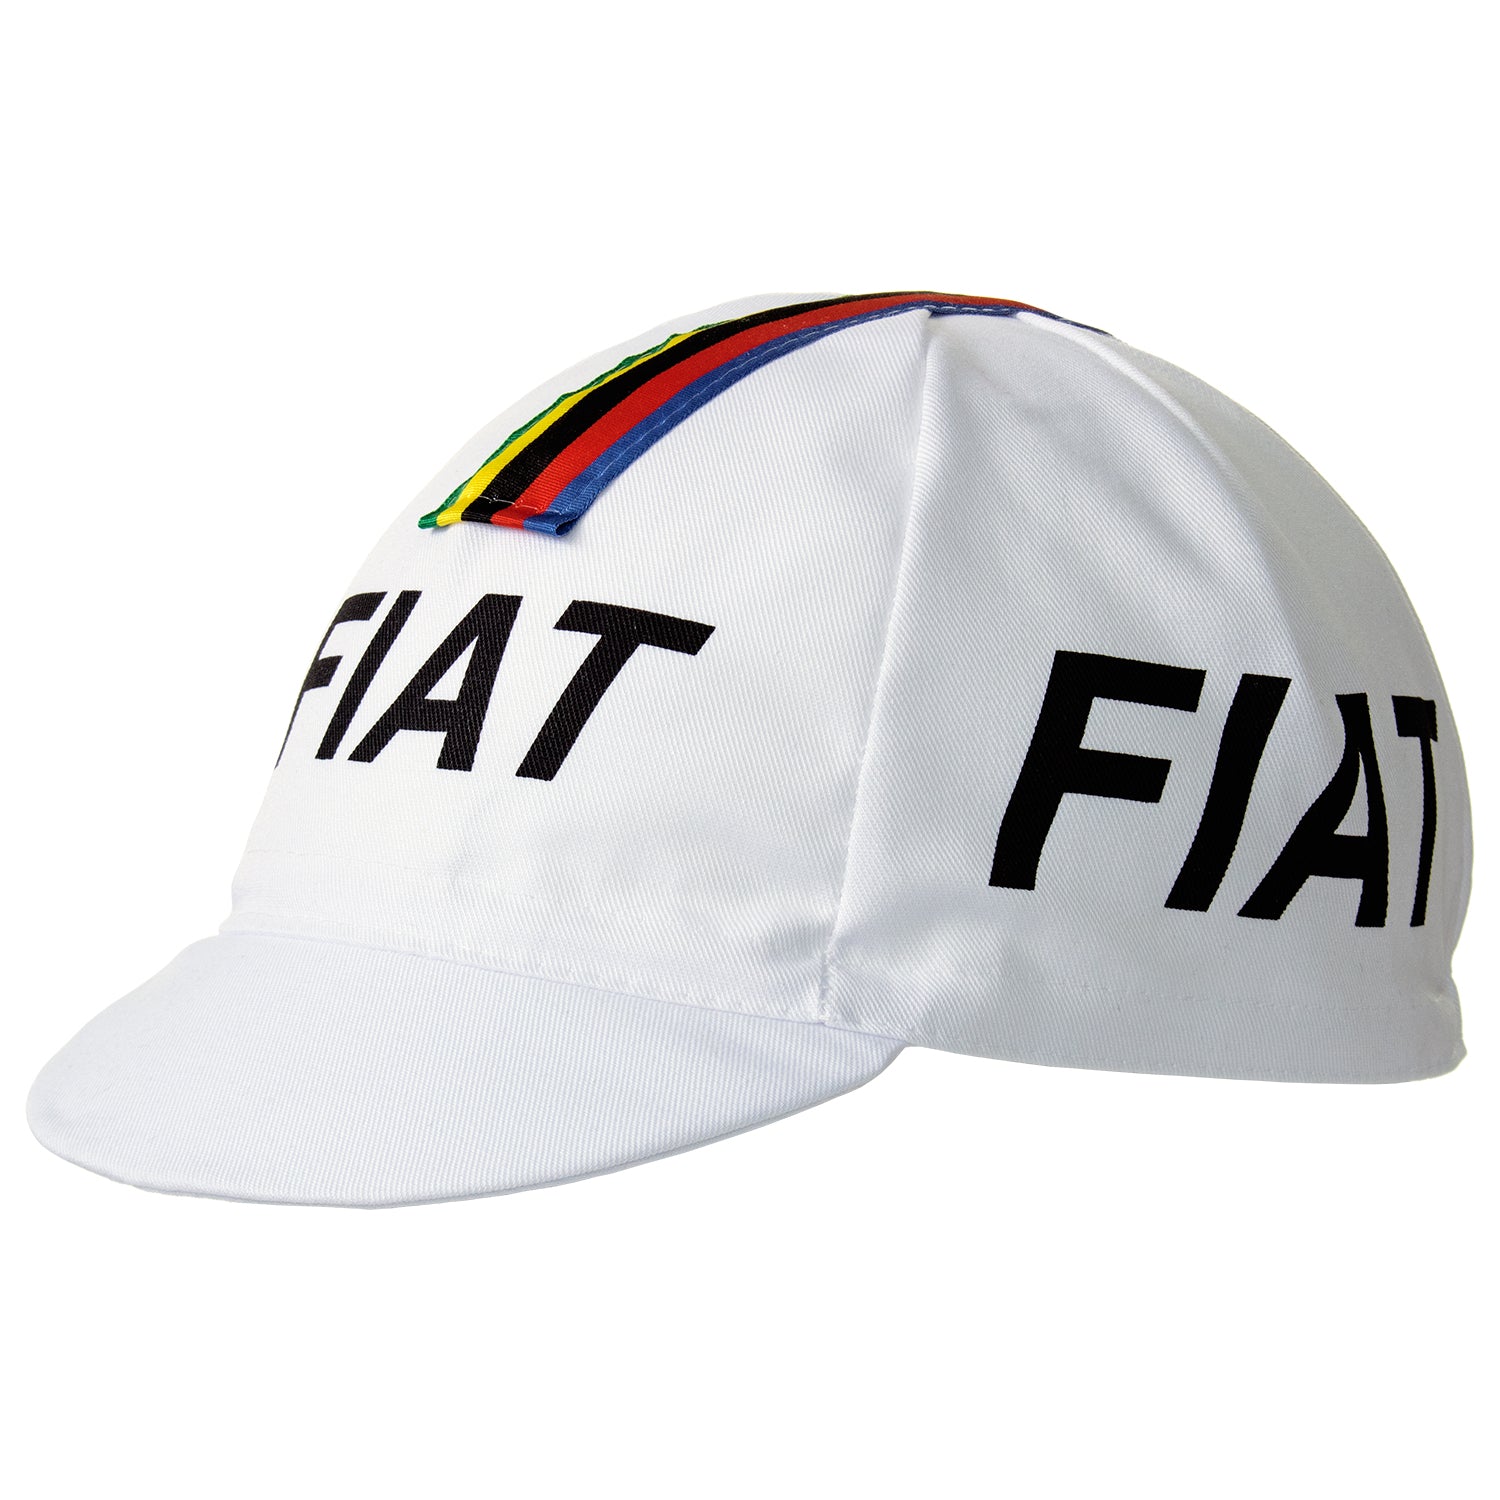 Fiat Retro Cotton Cycling Cap